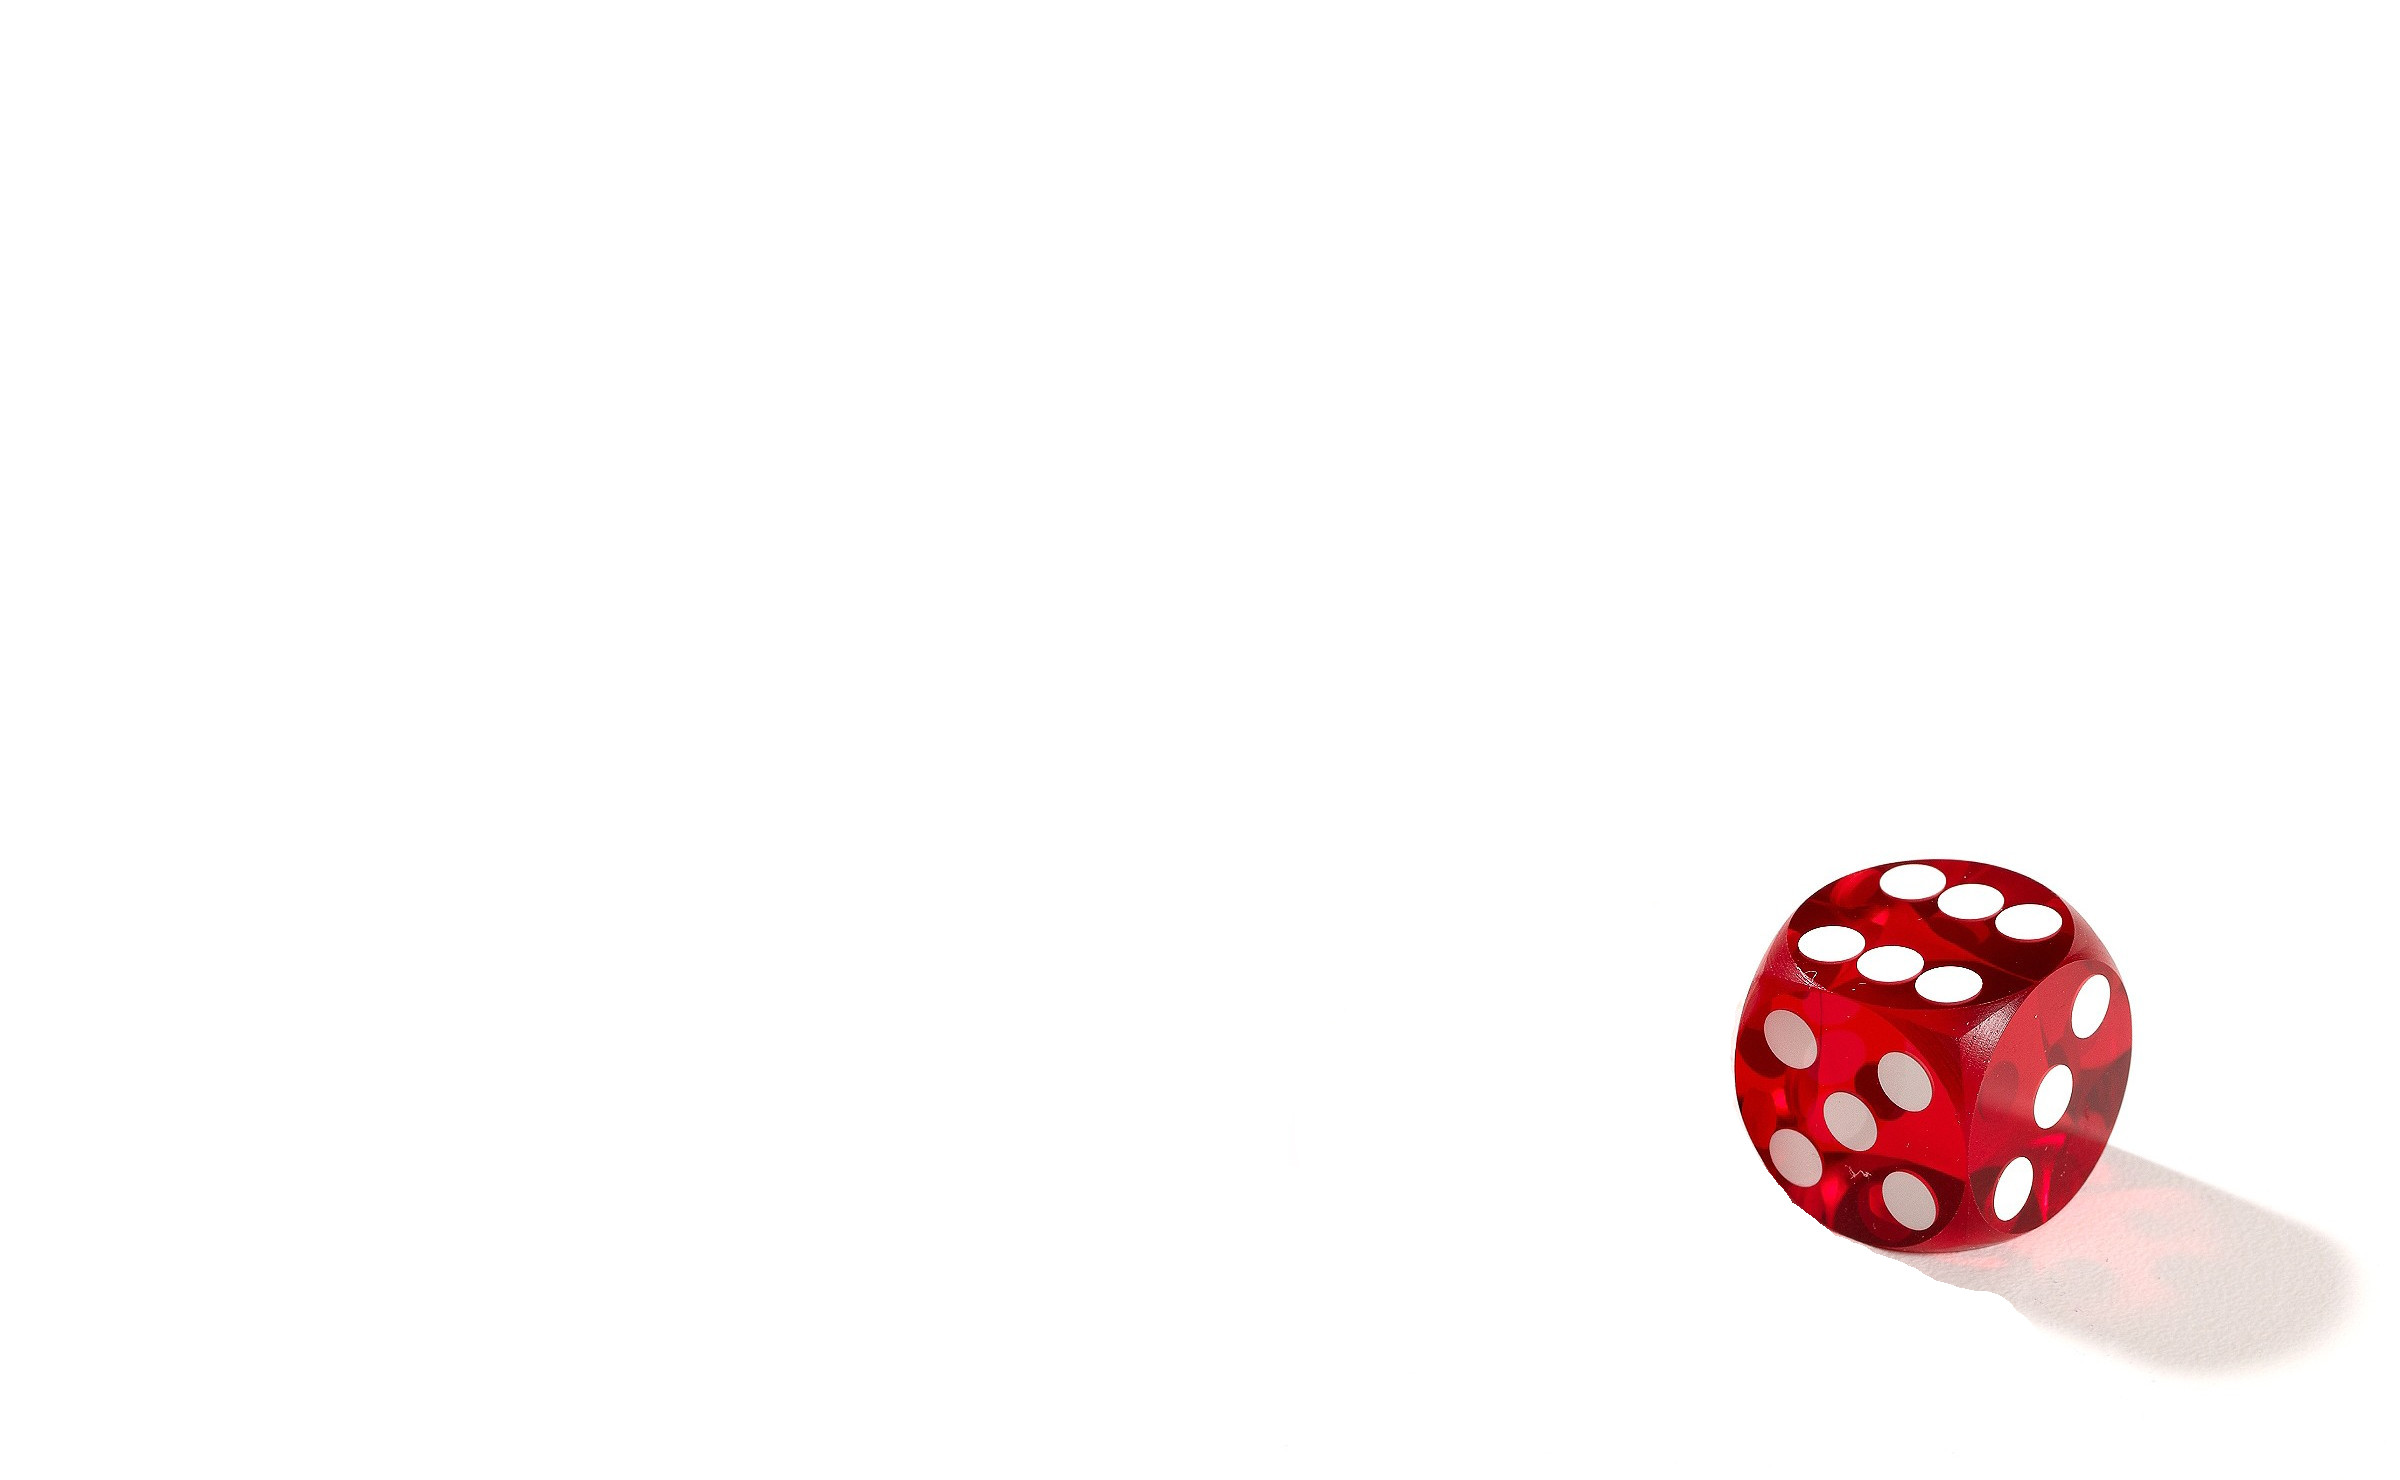 One dice